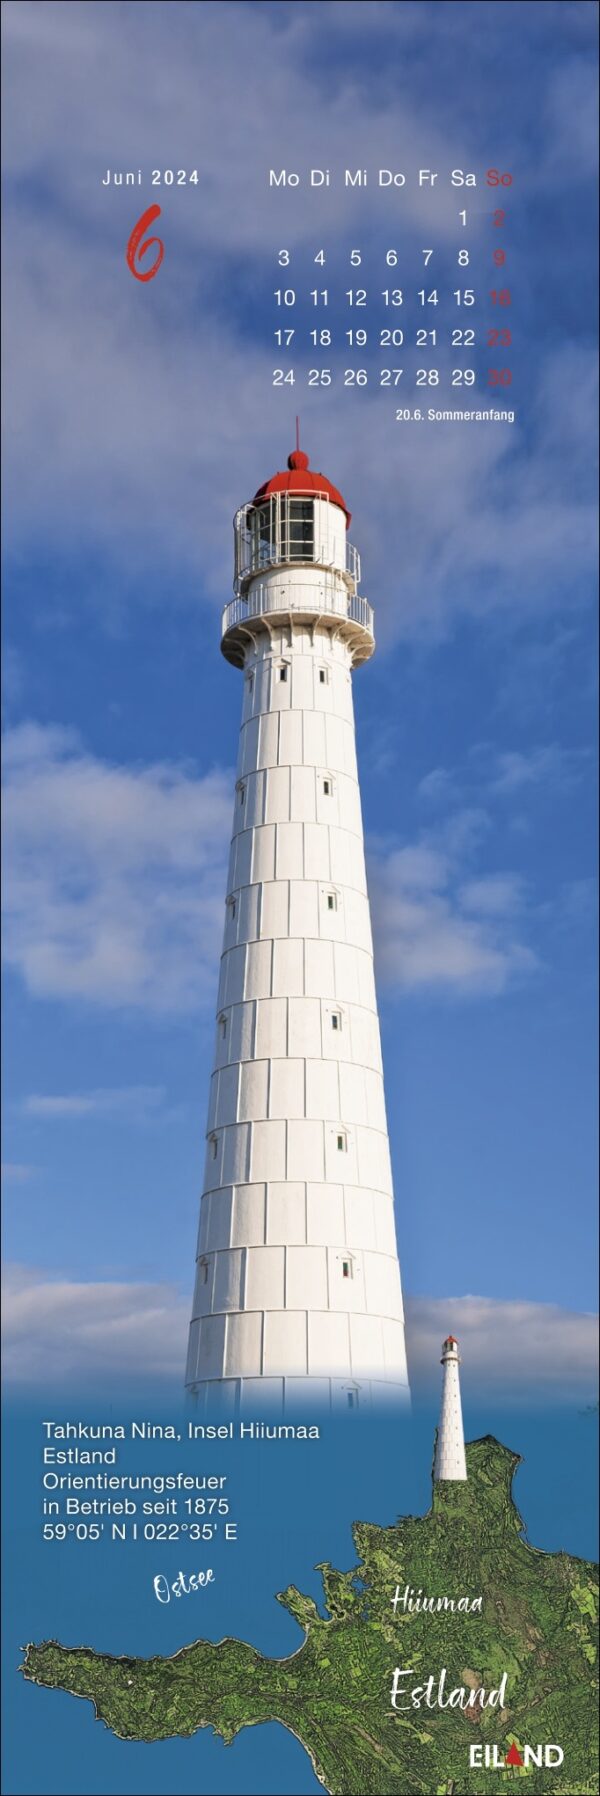 Der LilleEiland - Kalender 2024 mit einem majestätischen Leuchtturm, der anmutig im Hintergrund steht.